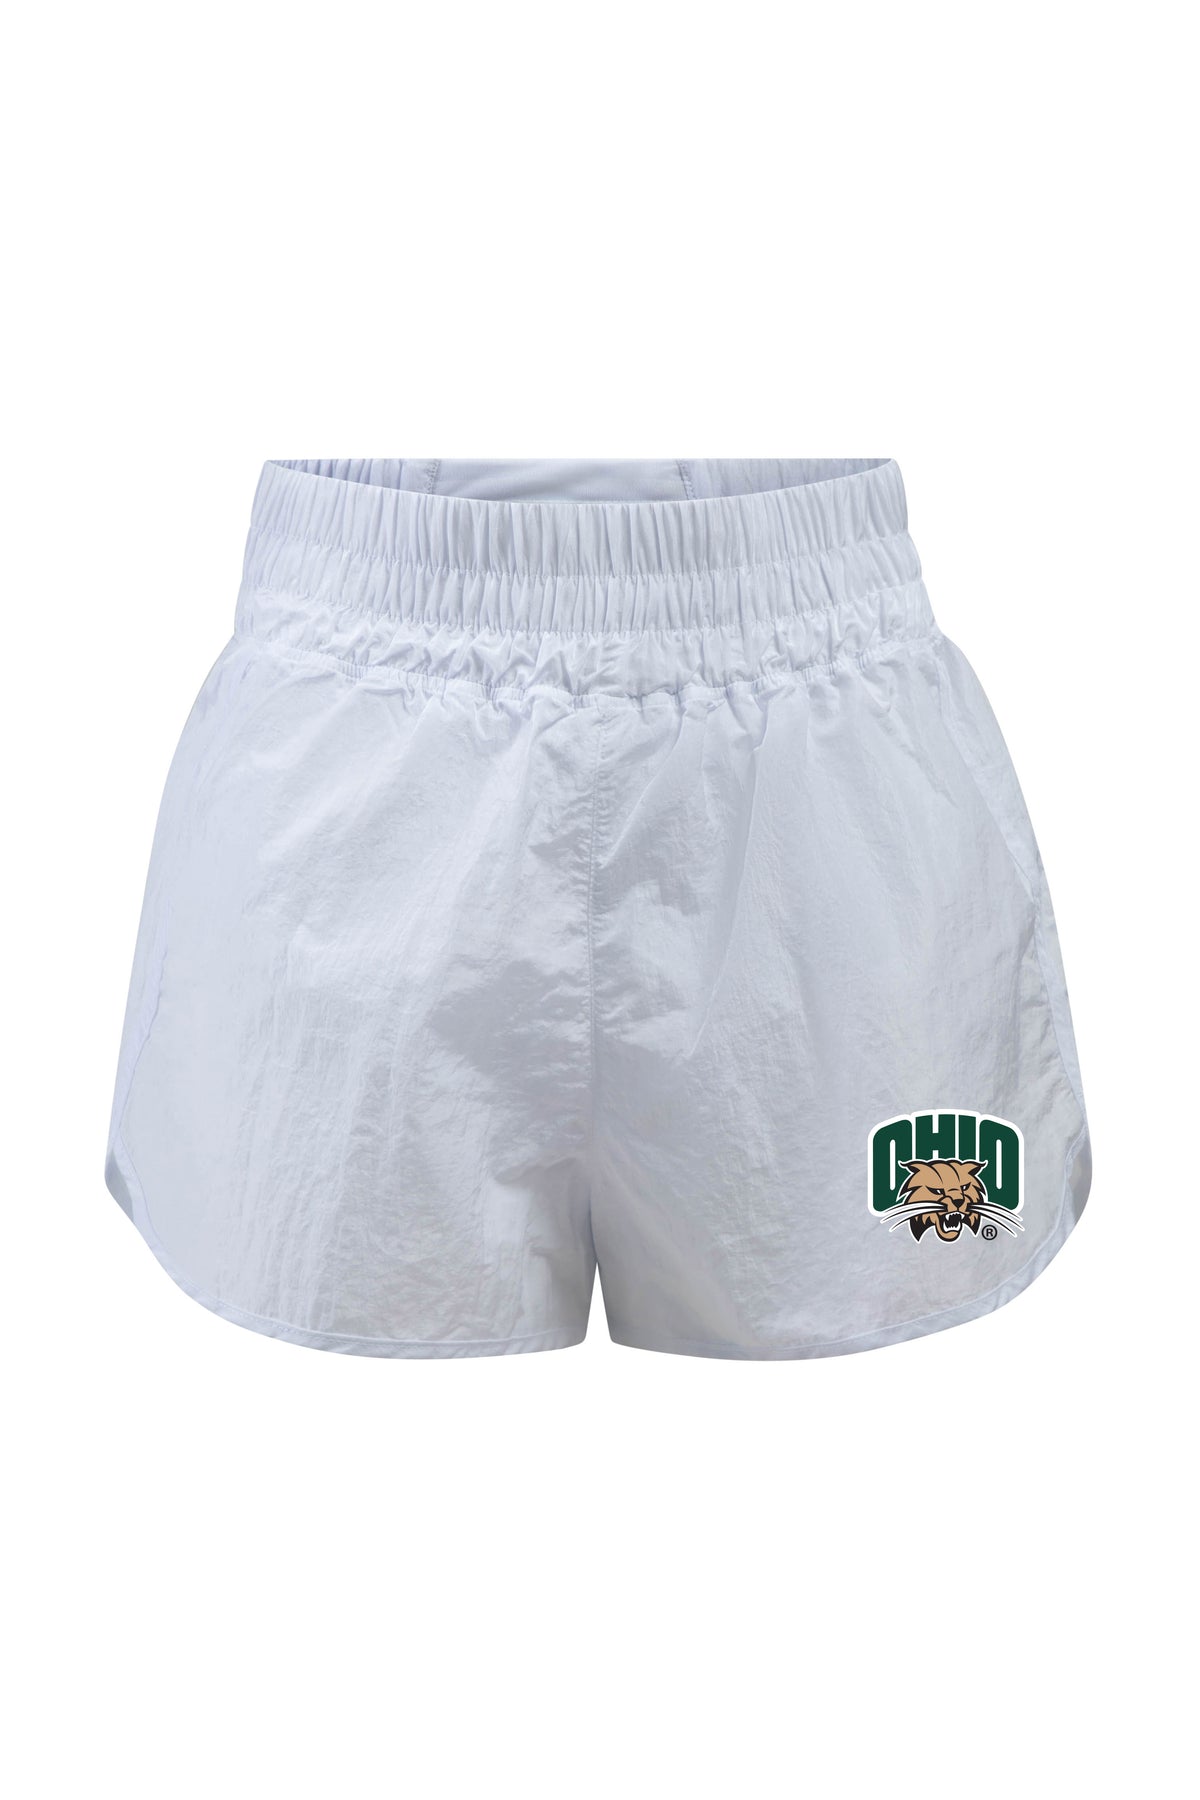 Ohio University Boxer Short